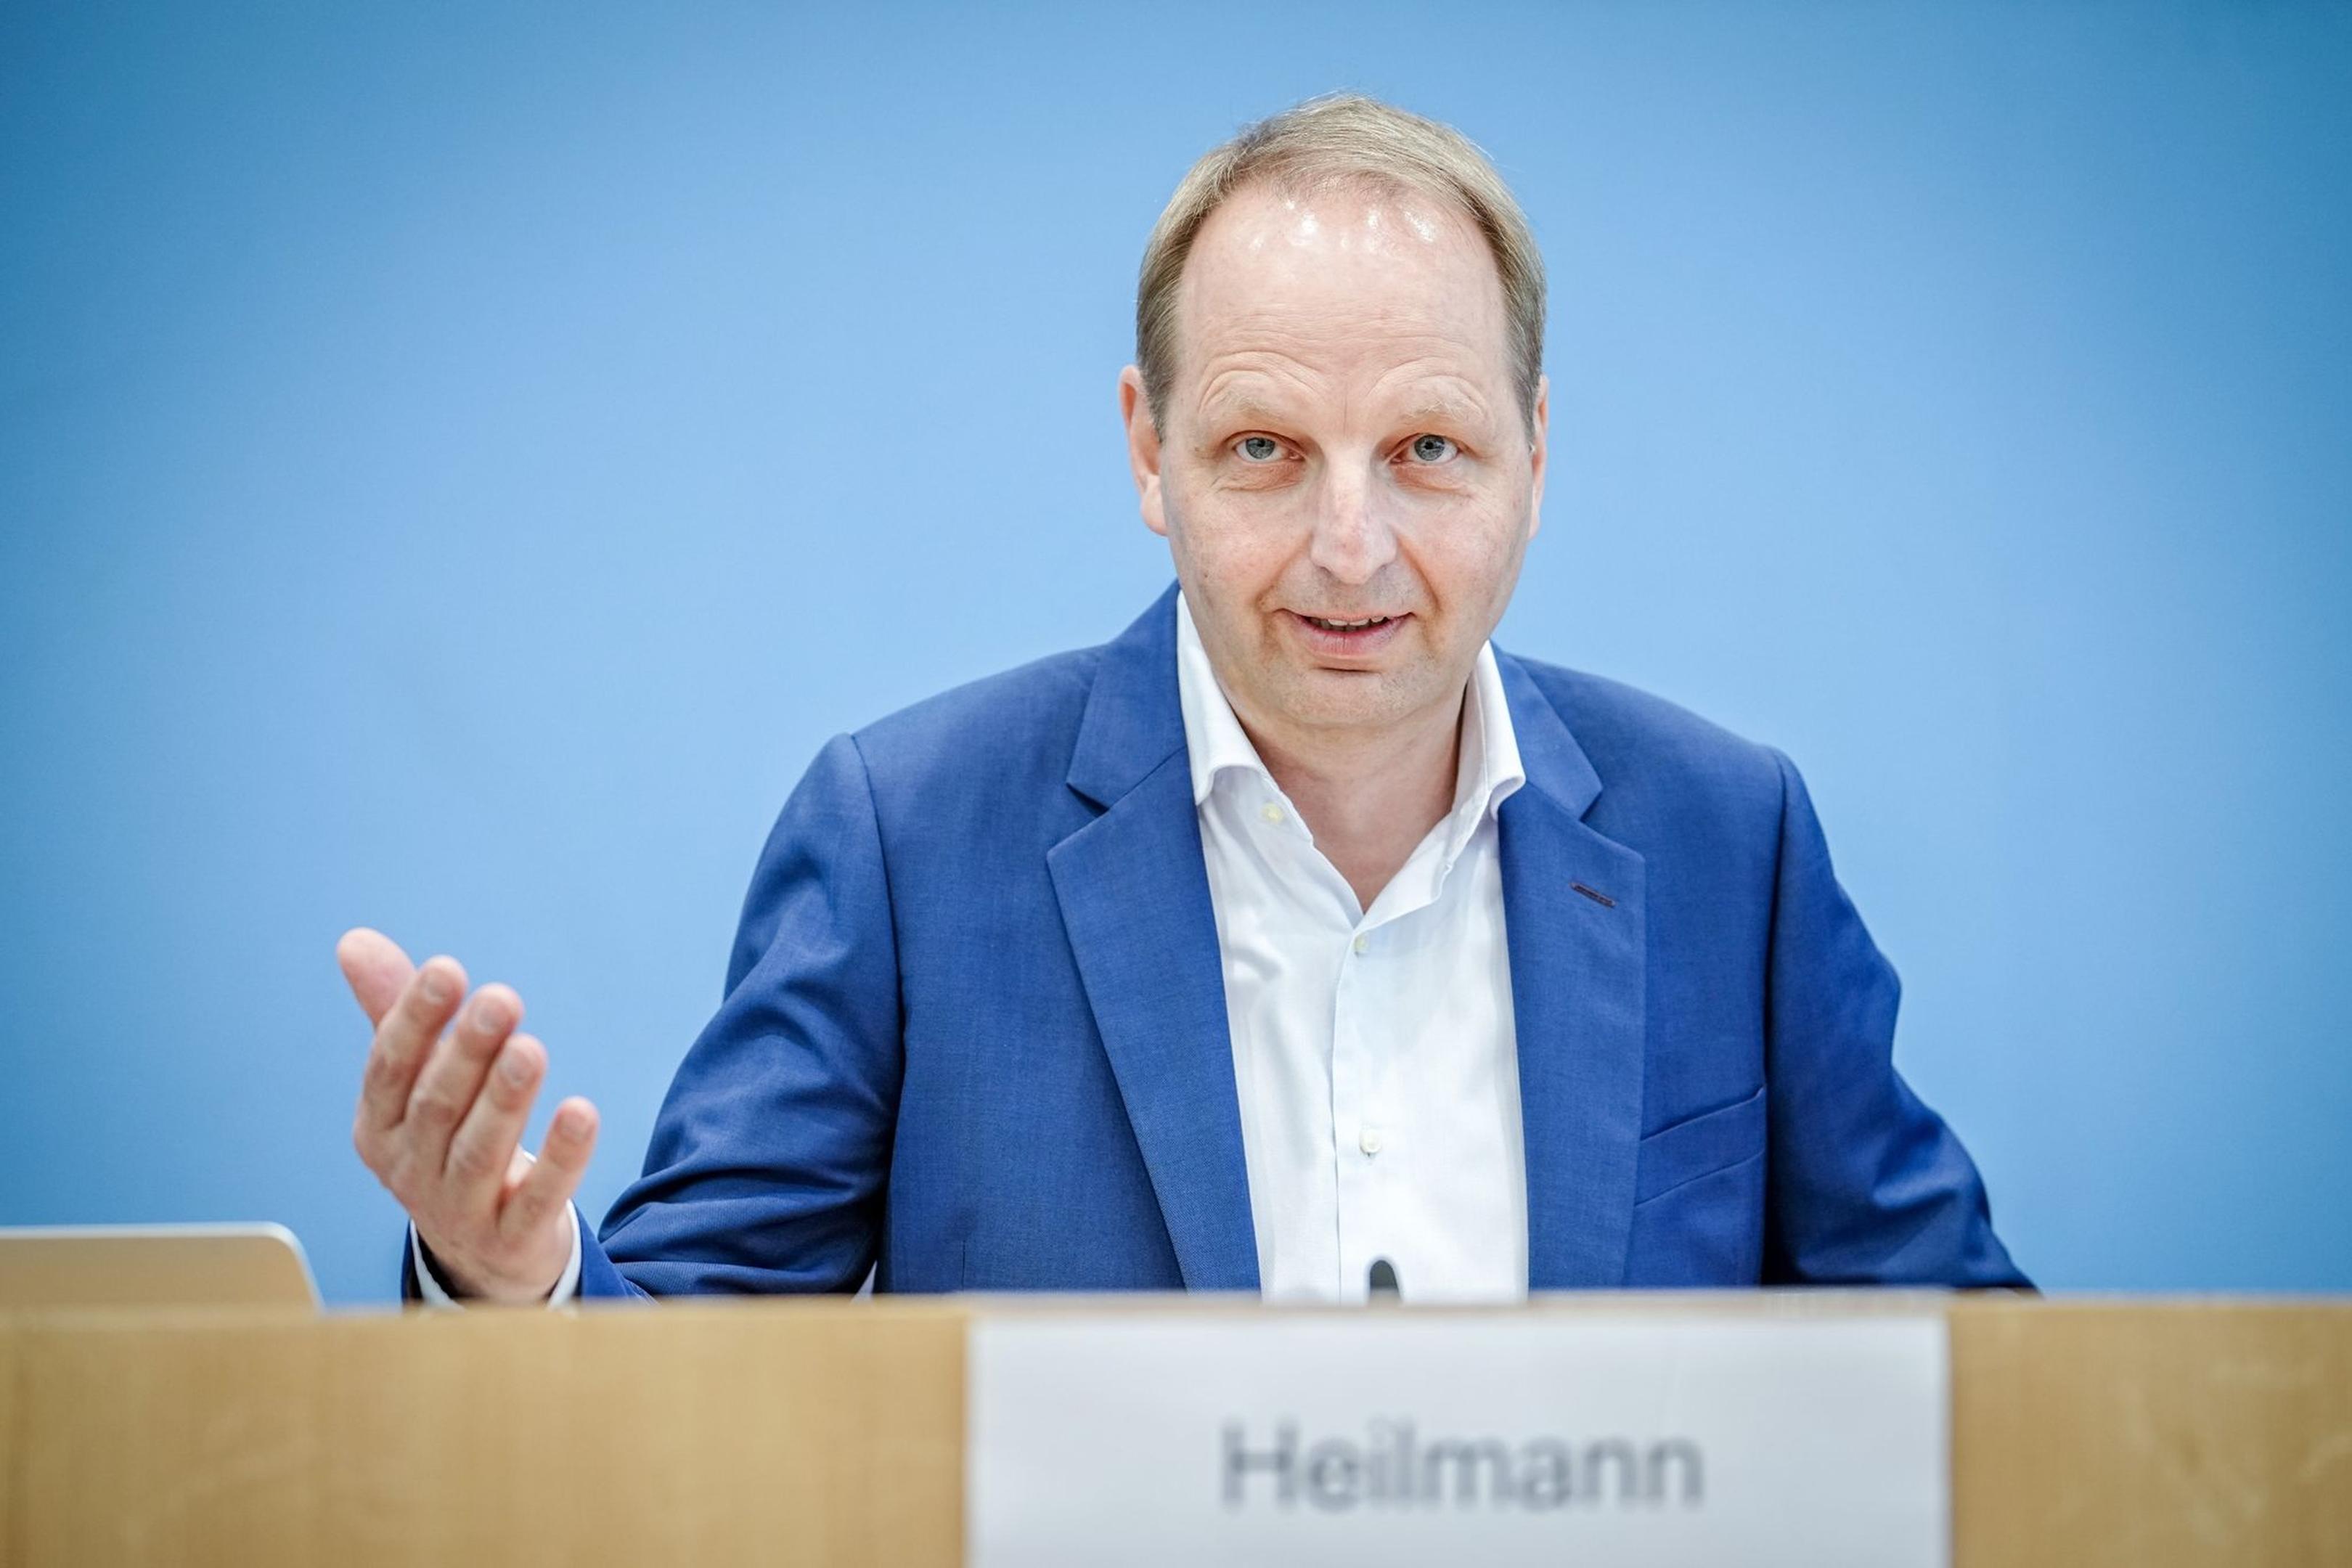 Ein zu schnelles Gesetzgebungsverfahren und eine Schwächung des Klimaschutzes? Der CDU-Bundestagsabgeordnete Thomas Heilmann zieht vors Bundesverfassunsgericht.